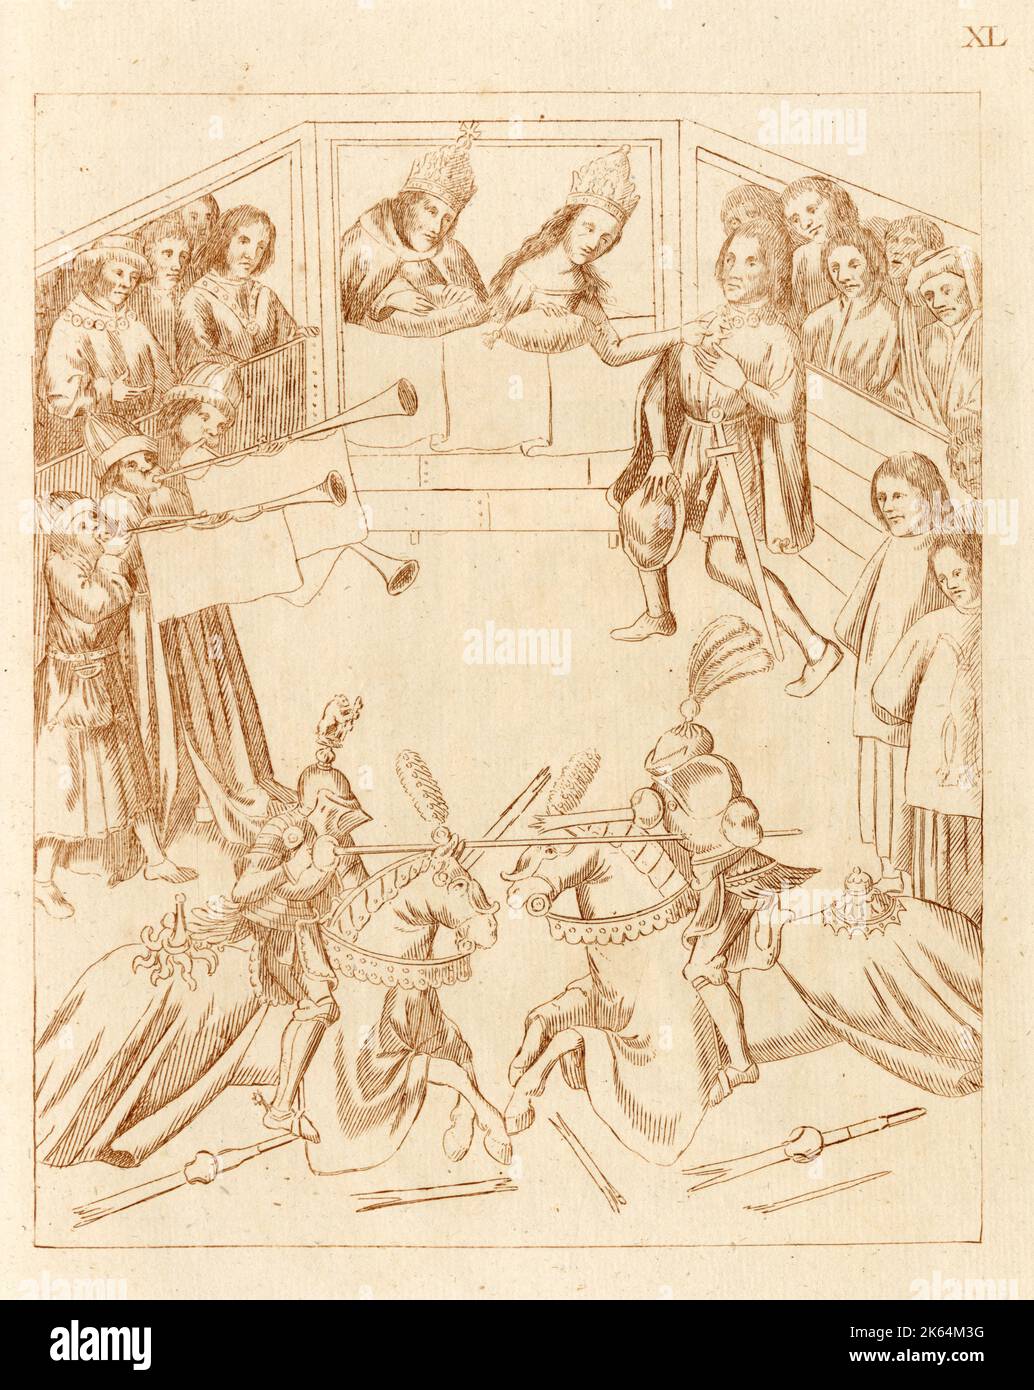 Richard Beauchamp, XIII conte di Warwick, uccide un duca in combattimento a cavallo; l'imperatrice del Sacro Romano Impero, Barbara di Cilli (1392-1451), riceve la livrea di un orso di Beauchamp. Foto Stock